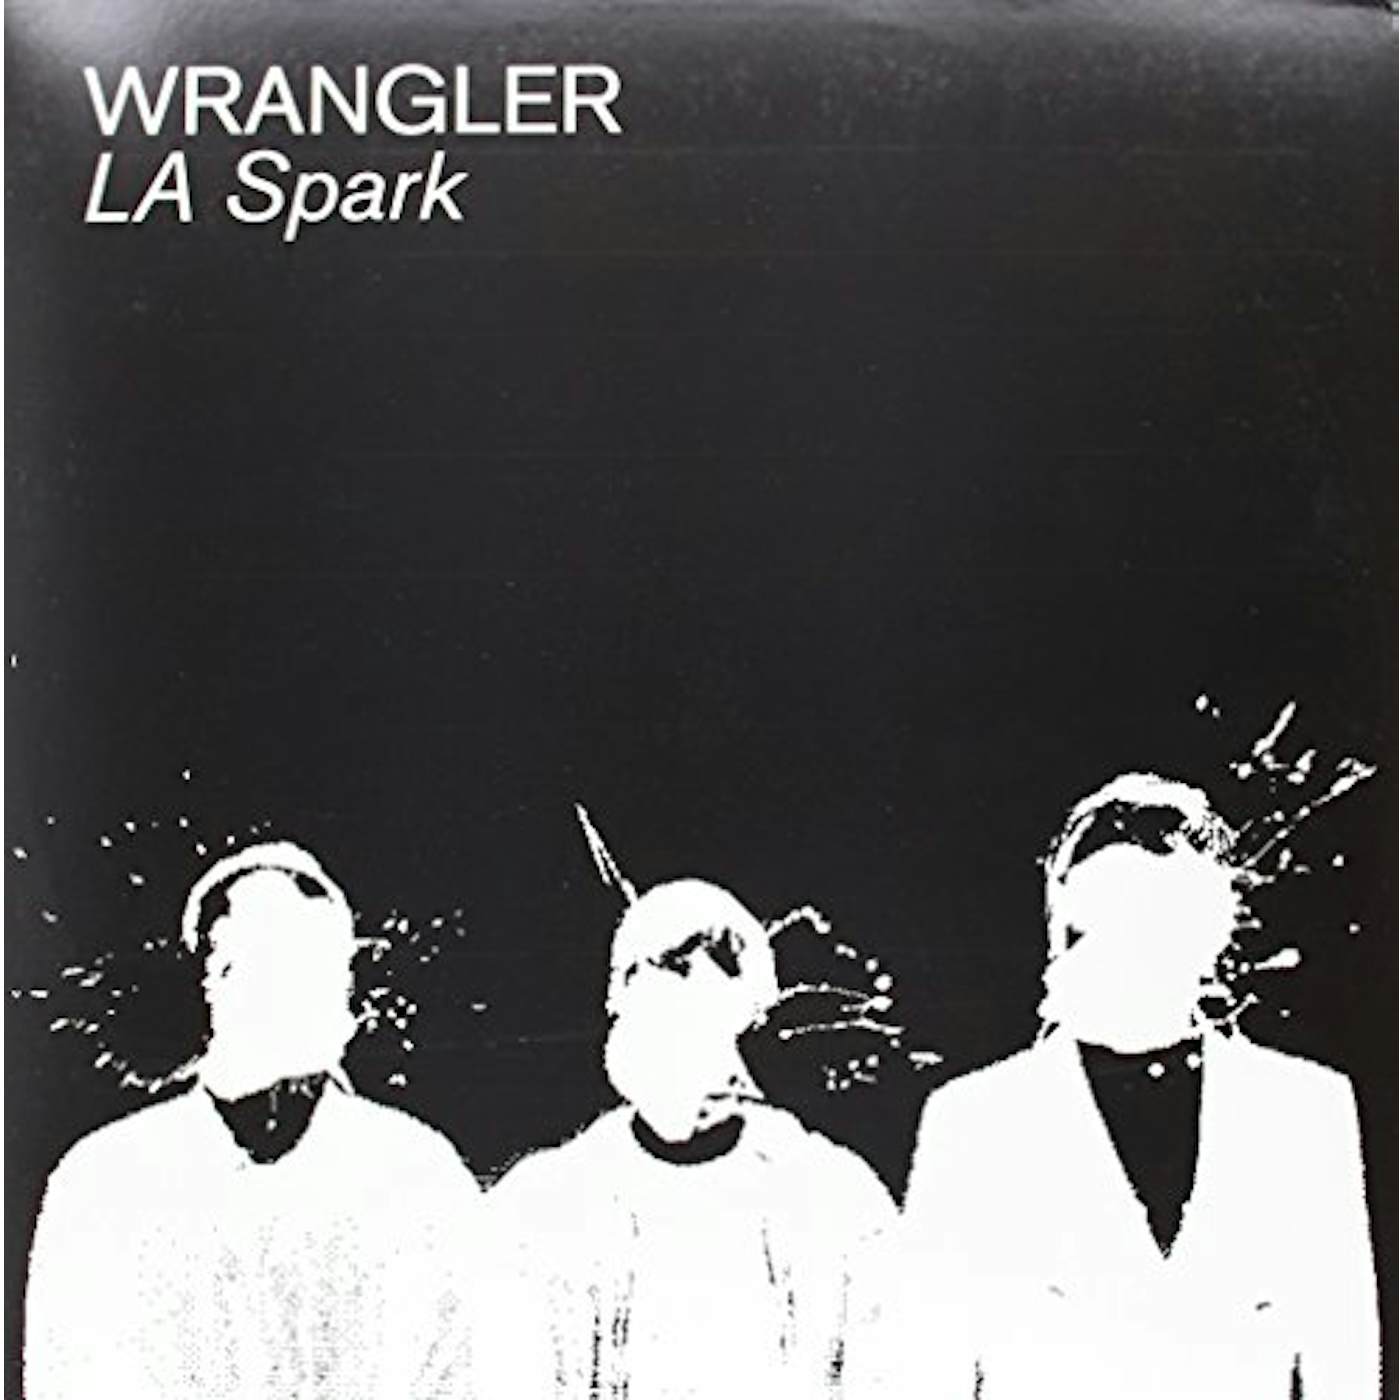 Wrangler LA Spark Vinyl Record